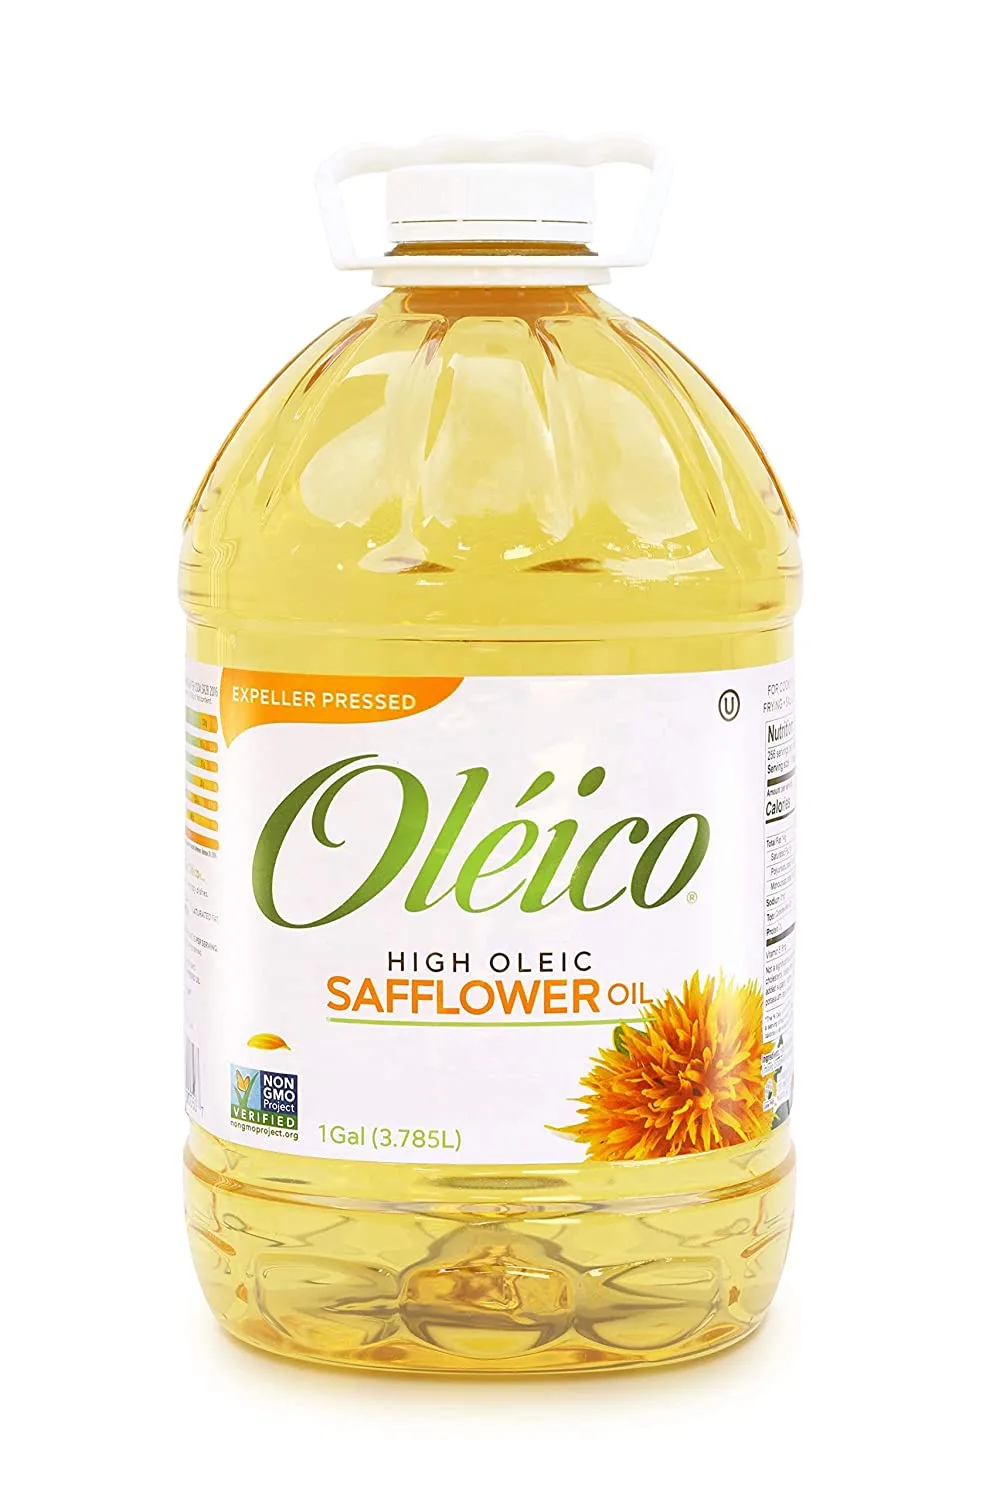 Oléico - High Oleic Safflower Oil 1 Gallon (128 fl. oz.)